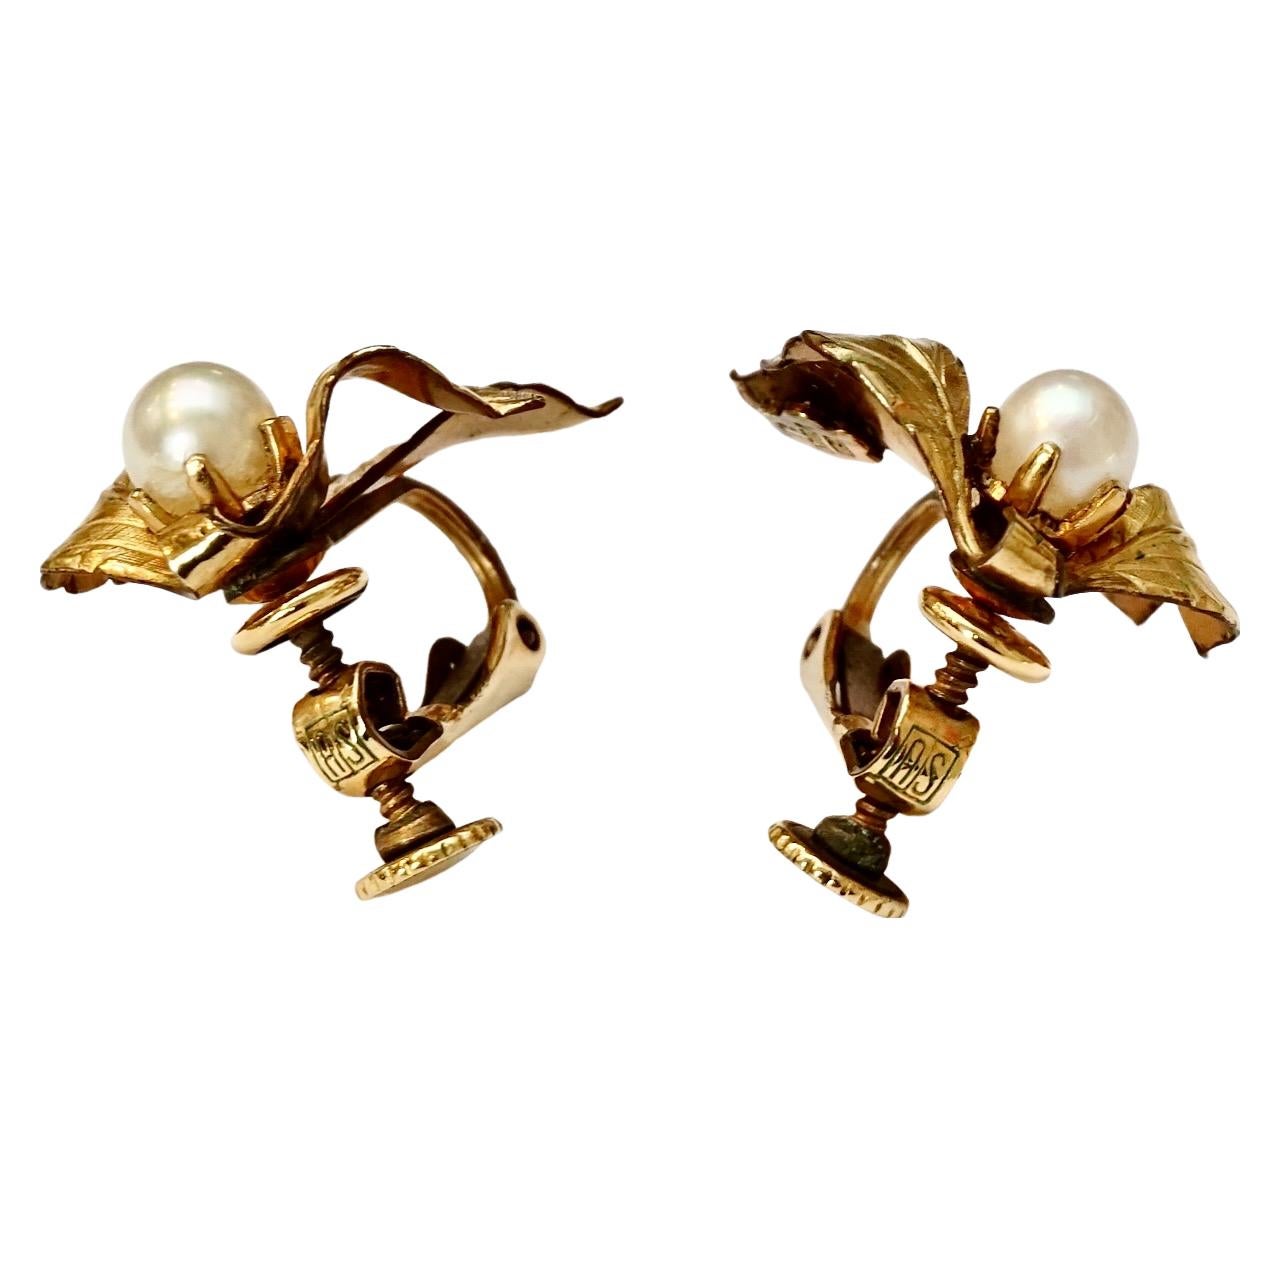 Hübsche 1/20 12K Gold gefüllte Ohrringe mit Schraubverschluss, die ein Blattdesign mit Zuchtperlen aufweisen. Die Länge beträgt 1,8 cm und die Breite 1,9 cm, und die Perlen sind 5 mm.

Dies ist ein elegantes Paar Ohrringe aus Gold und Zuchtperlen.